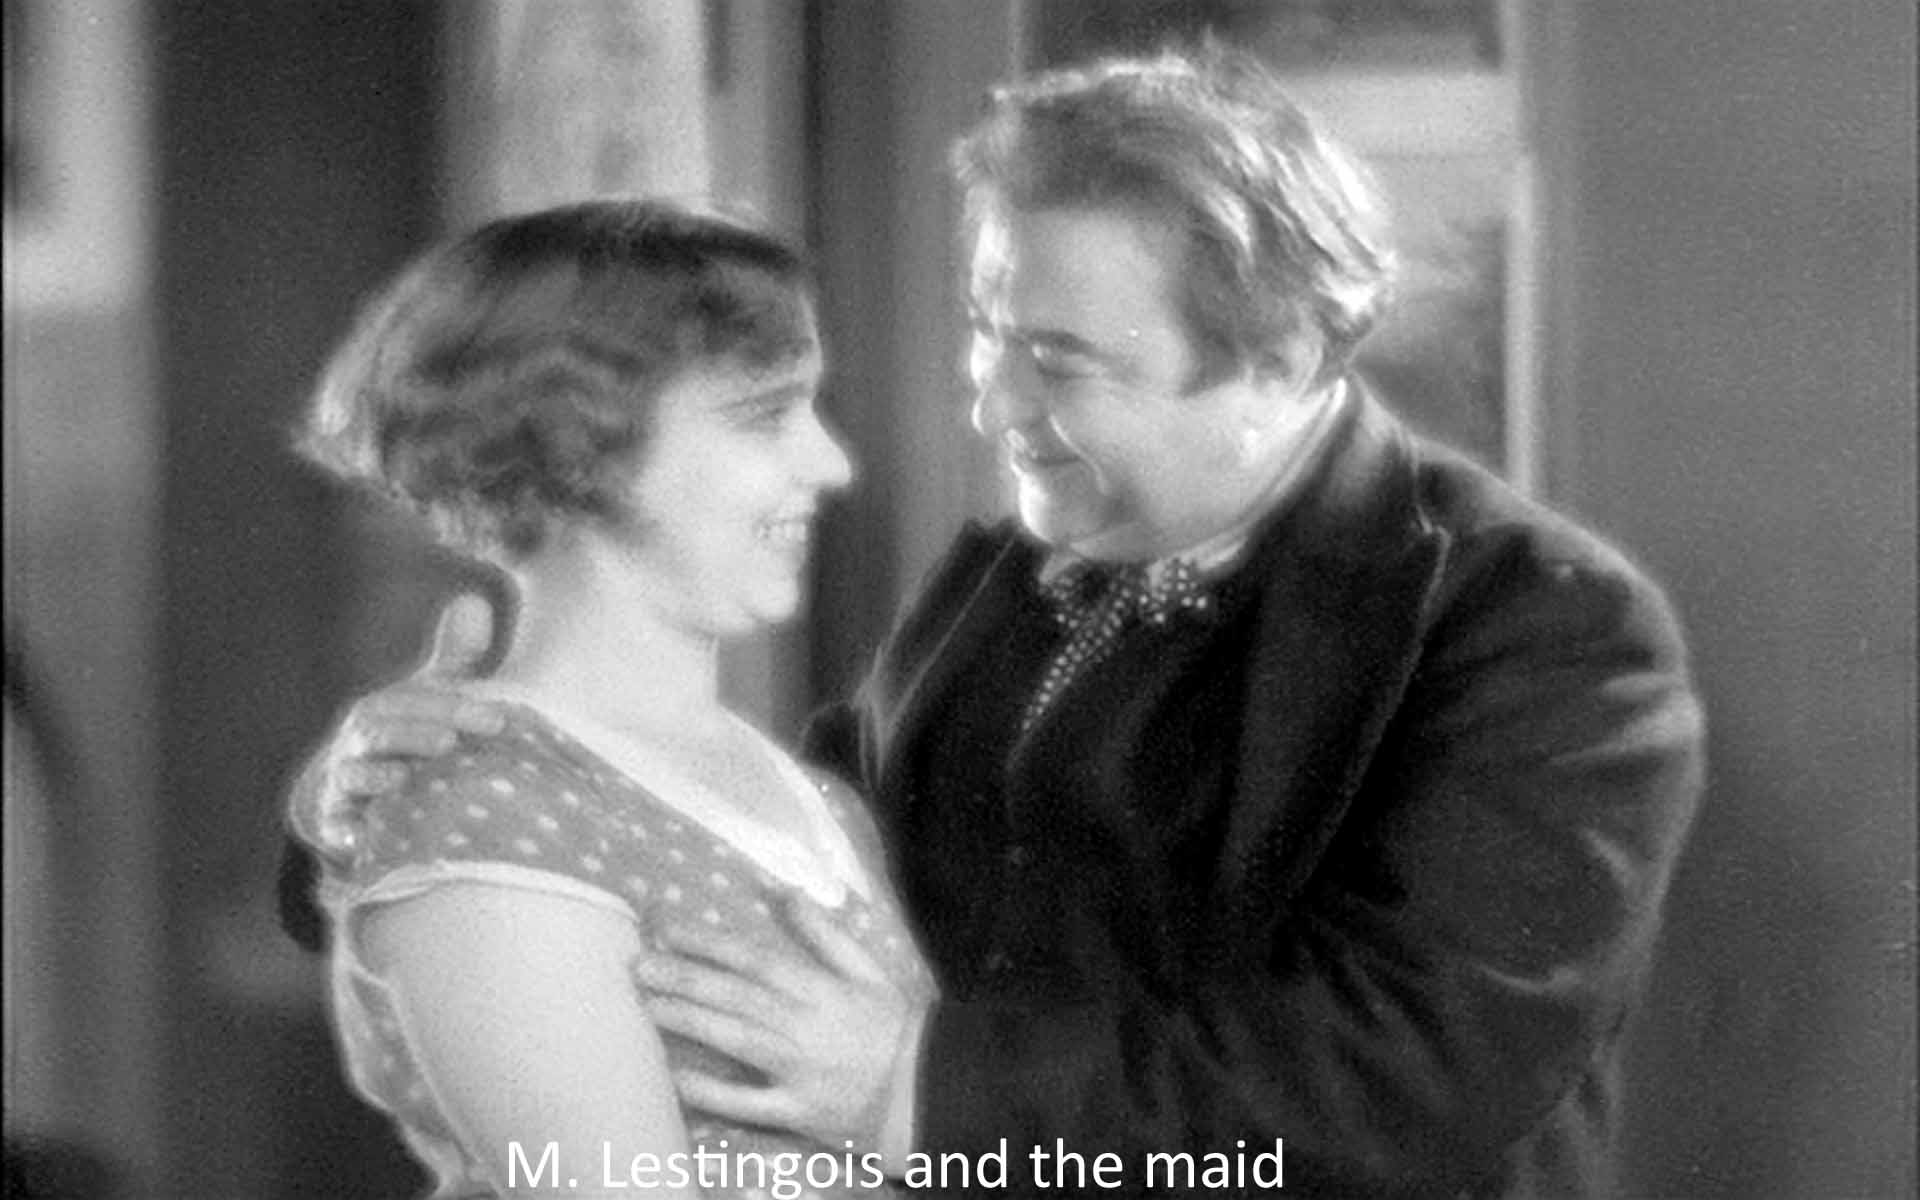 M. Lestingois and the maid